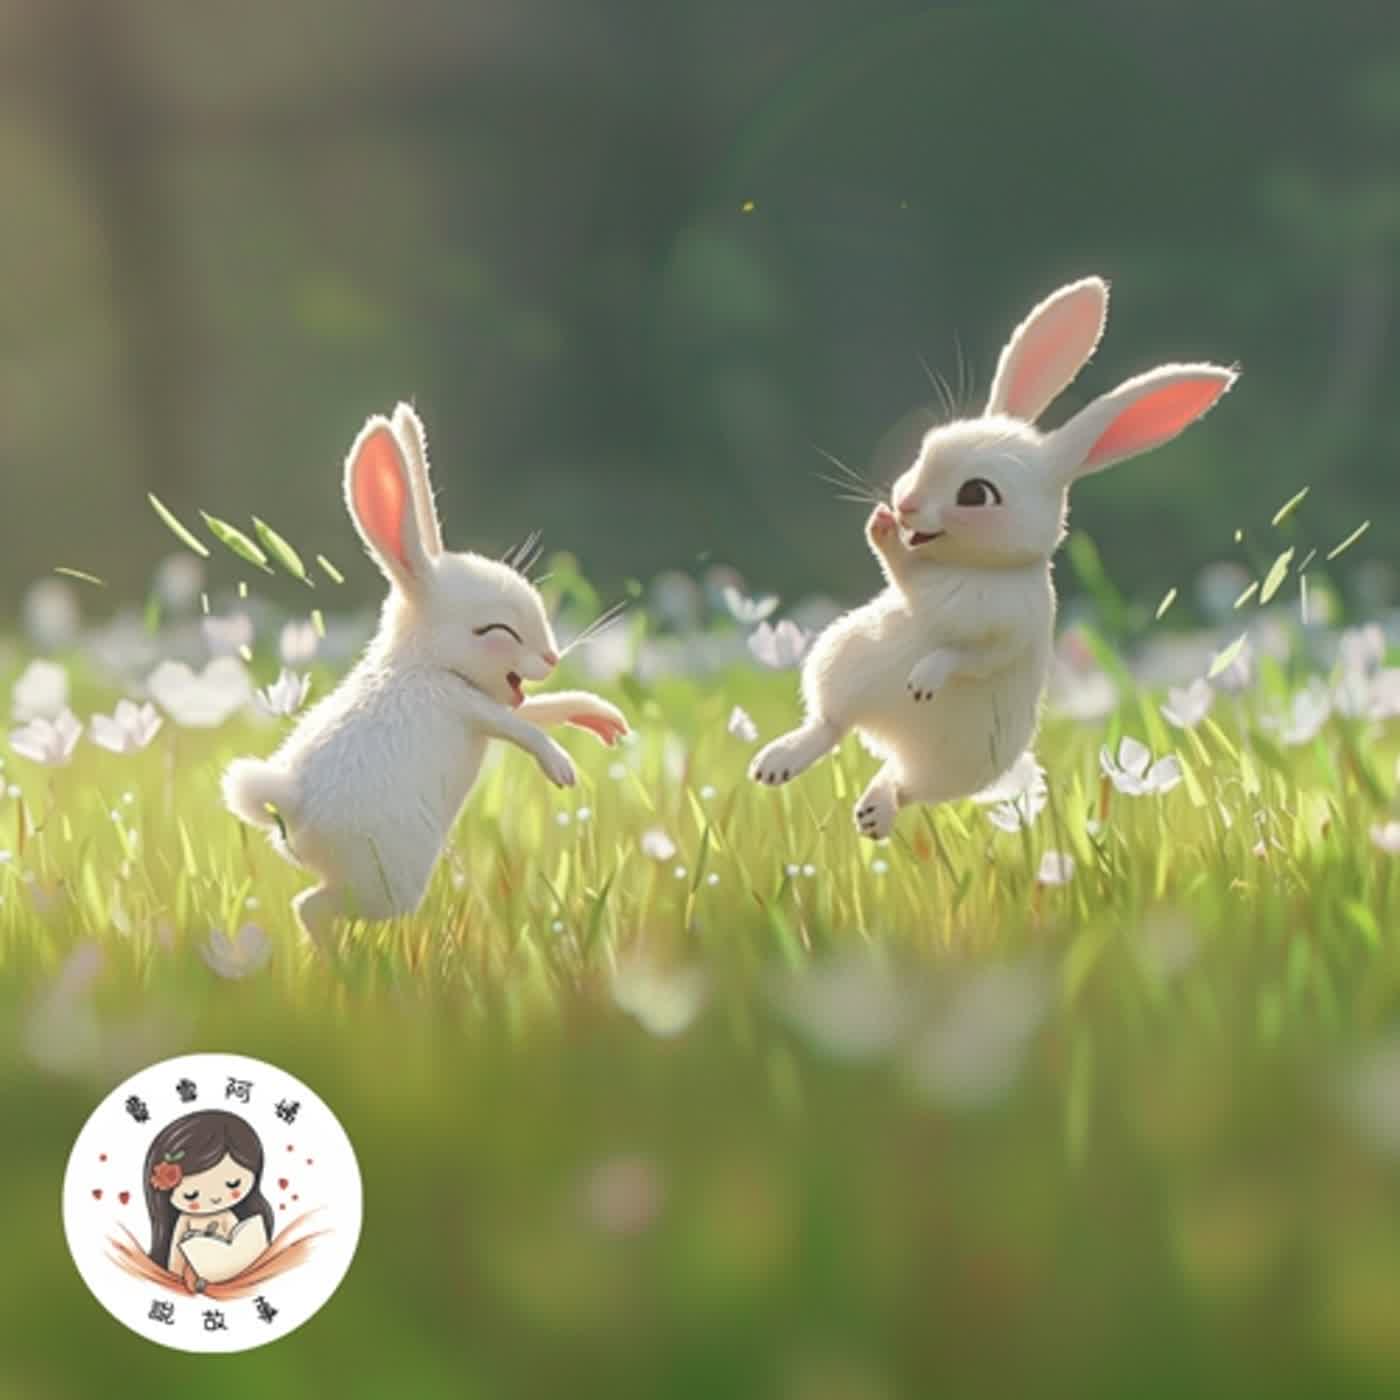 【兒童故事】EP12. 《兔兔兄弟的運動會》友情的美好